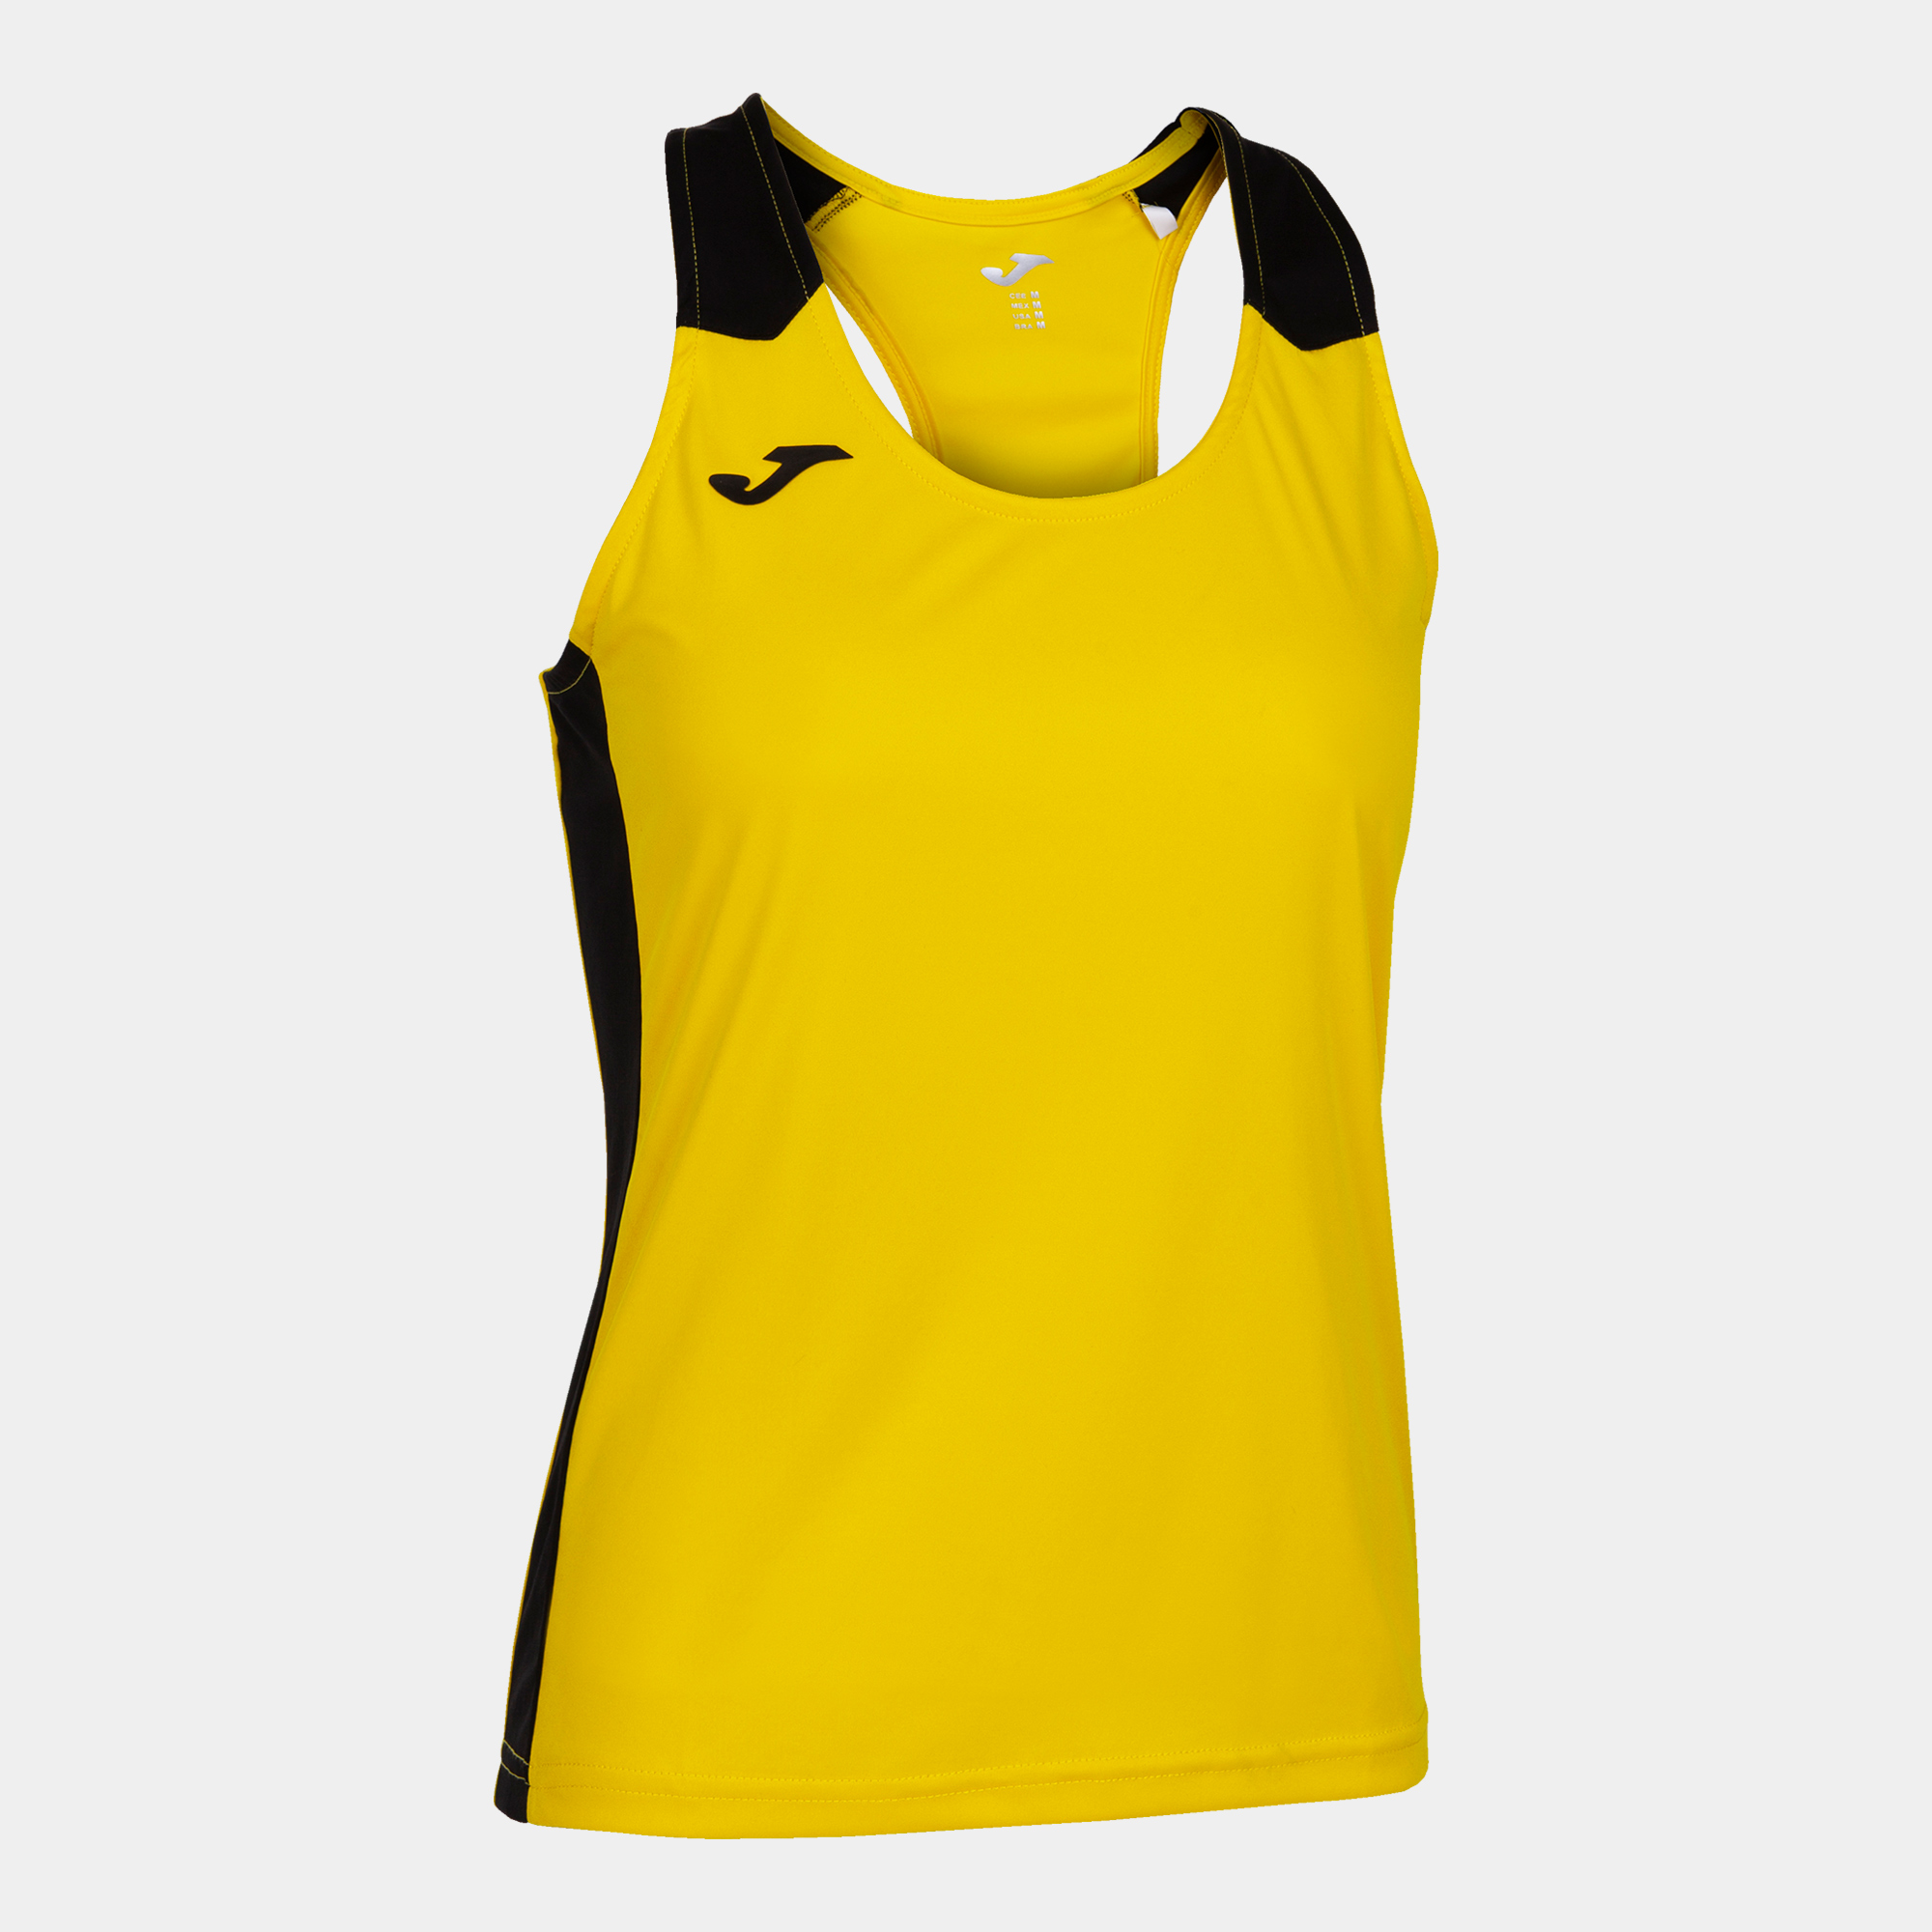 T-shirt De Alça Joma Record Ii Amarelo Preto - amarillo-negro - 